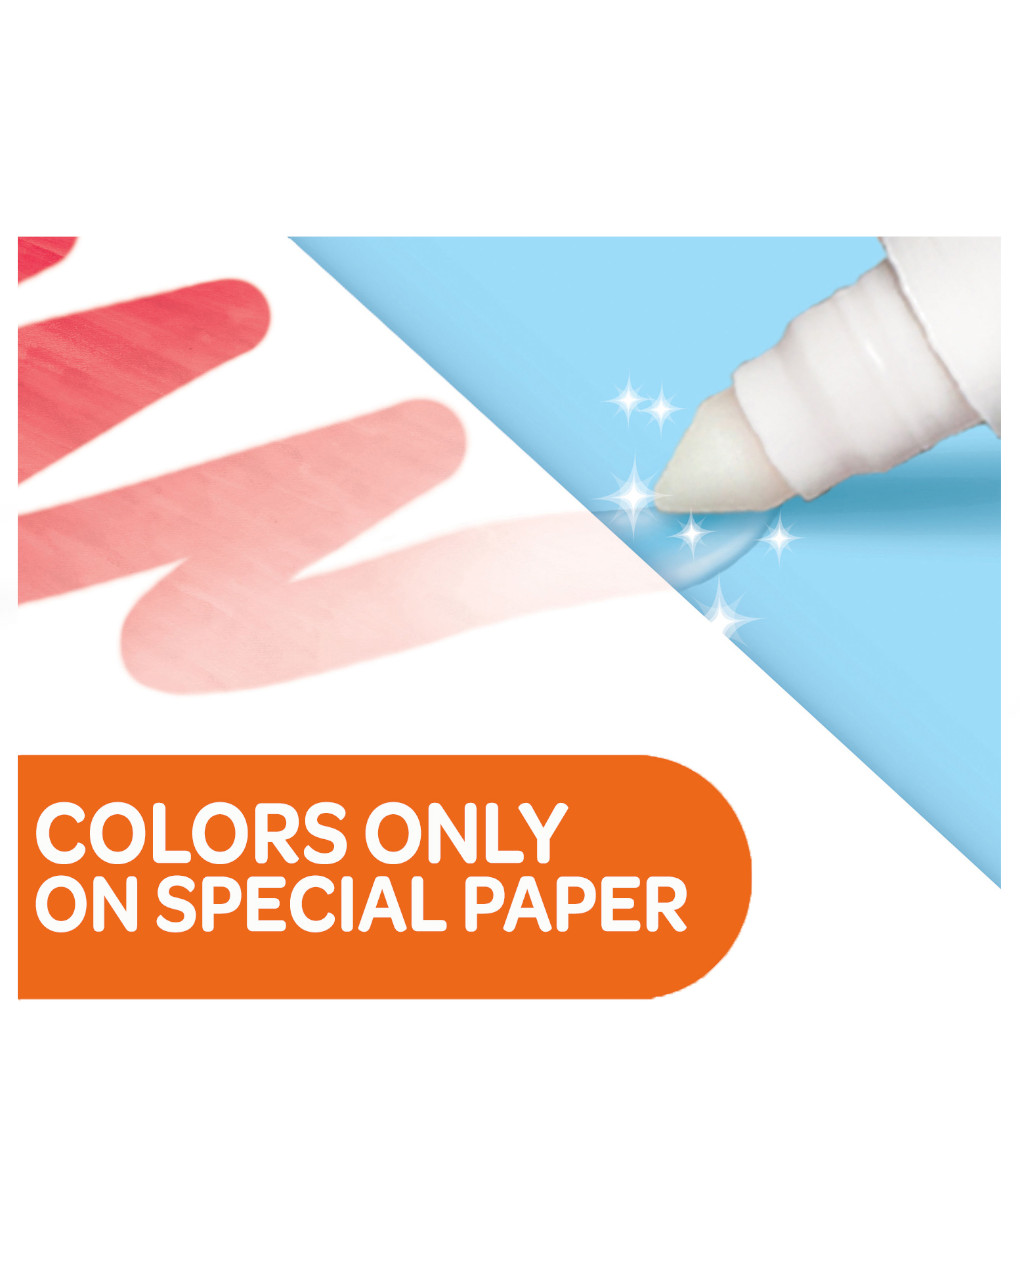 Juego de libros para colorear de temática azul - crayola color wonder - Crayola